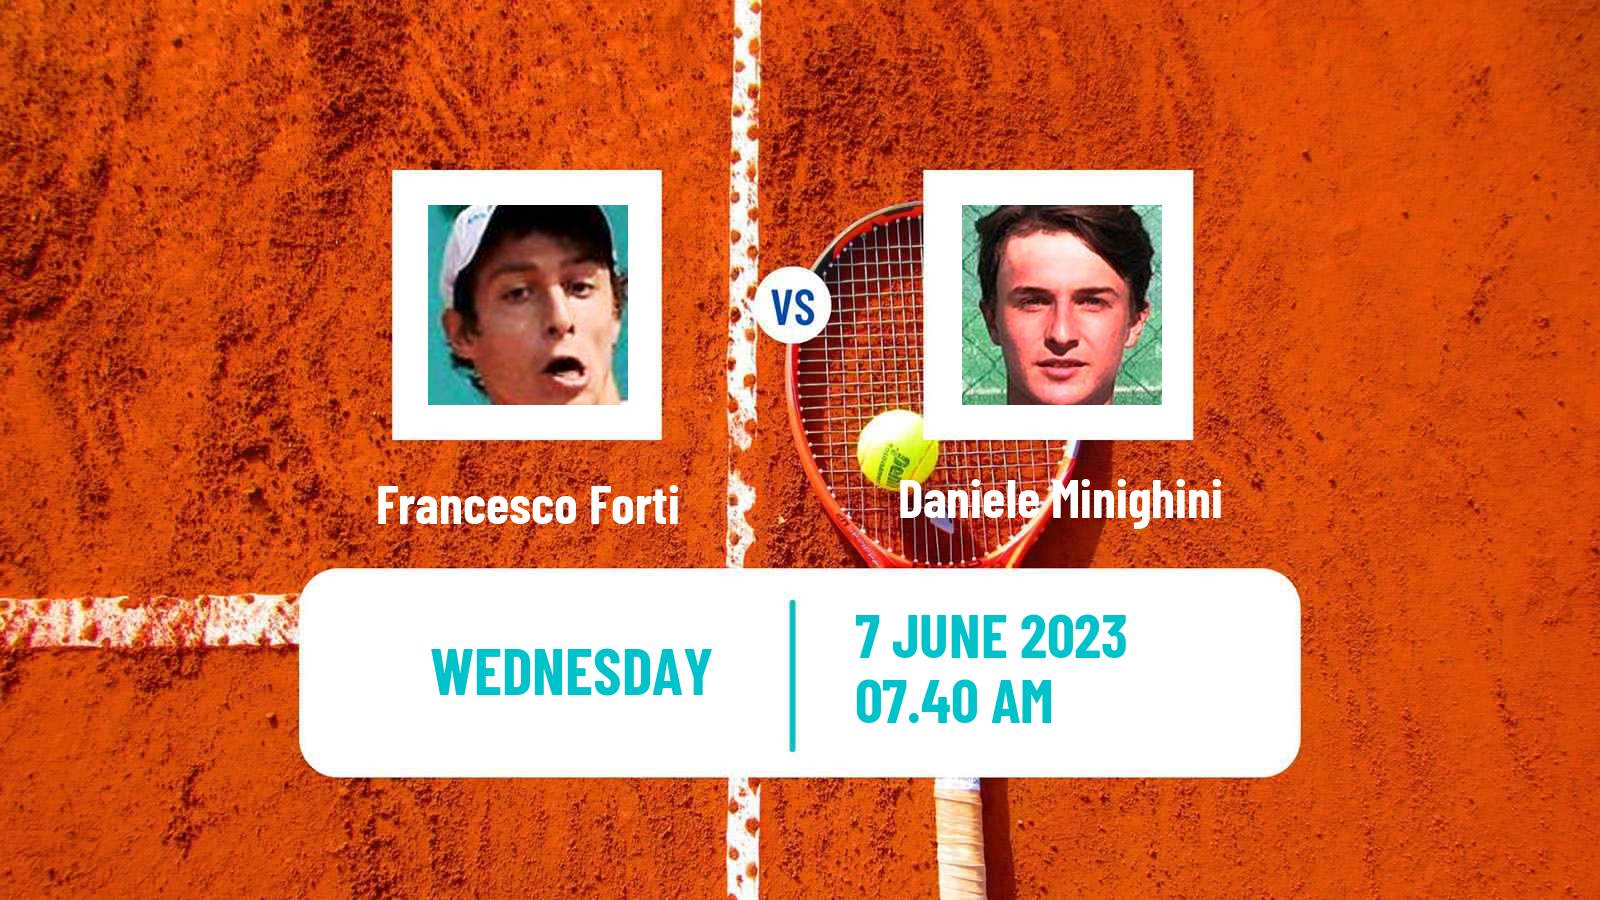 Tennis ITF M15 Frascati Men Francesco Forti - Daniele Minighini